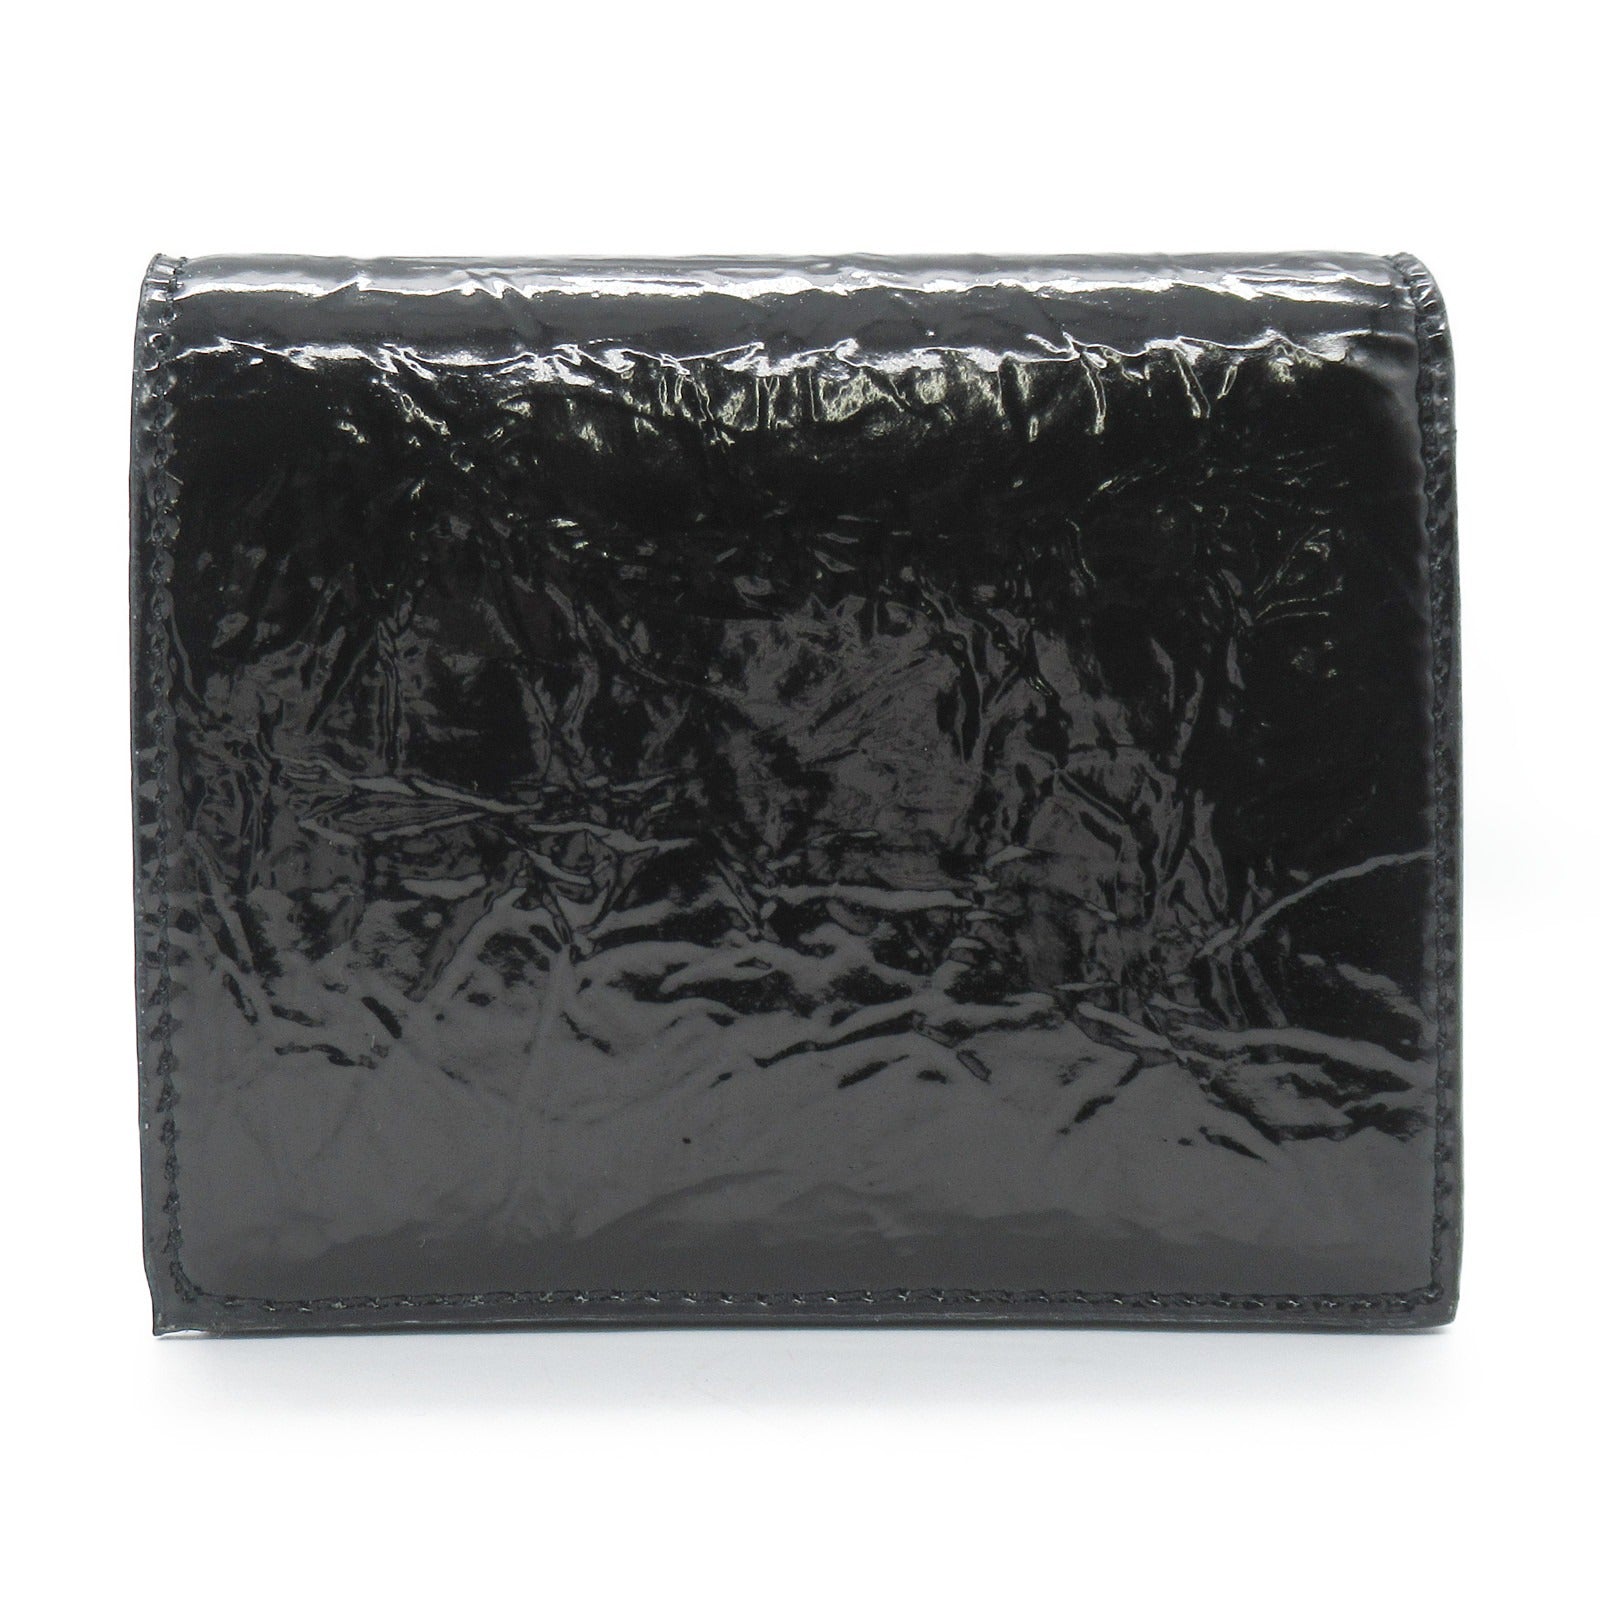 Vivienne Westwood Double Fold Wallet Double Folded Wallet  Leather  Black 51010024S000W